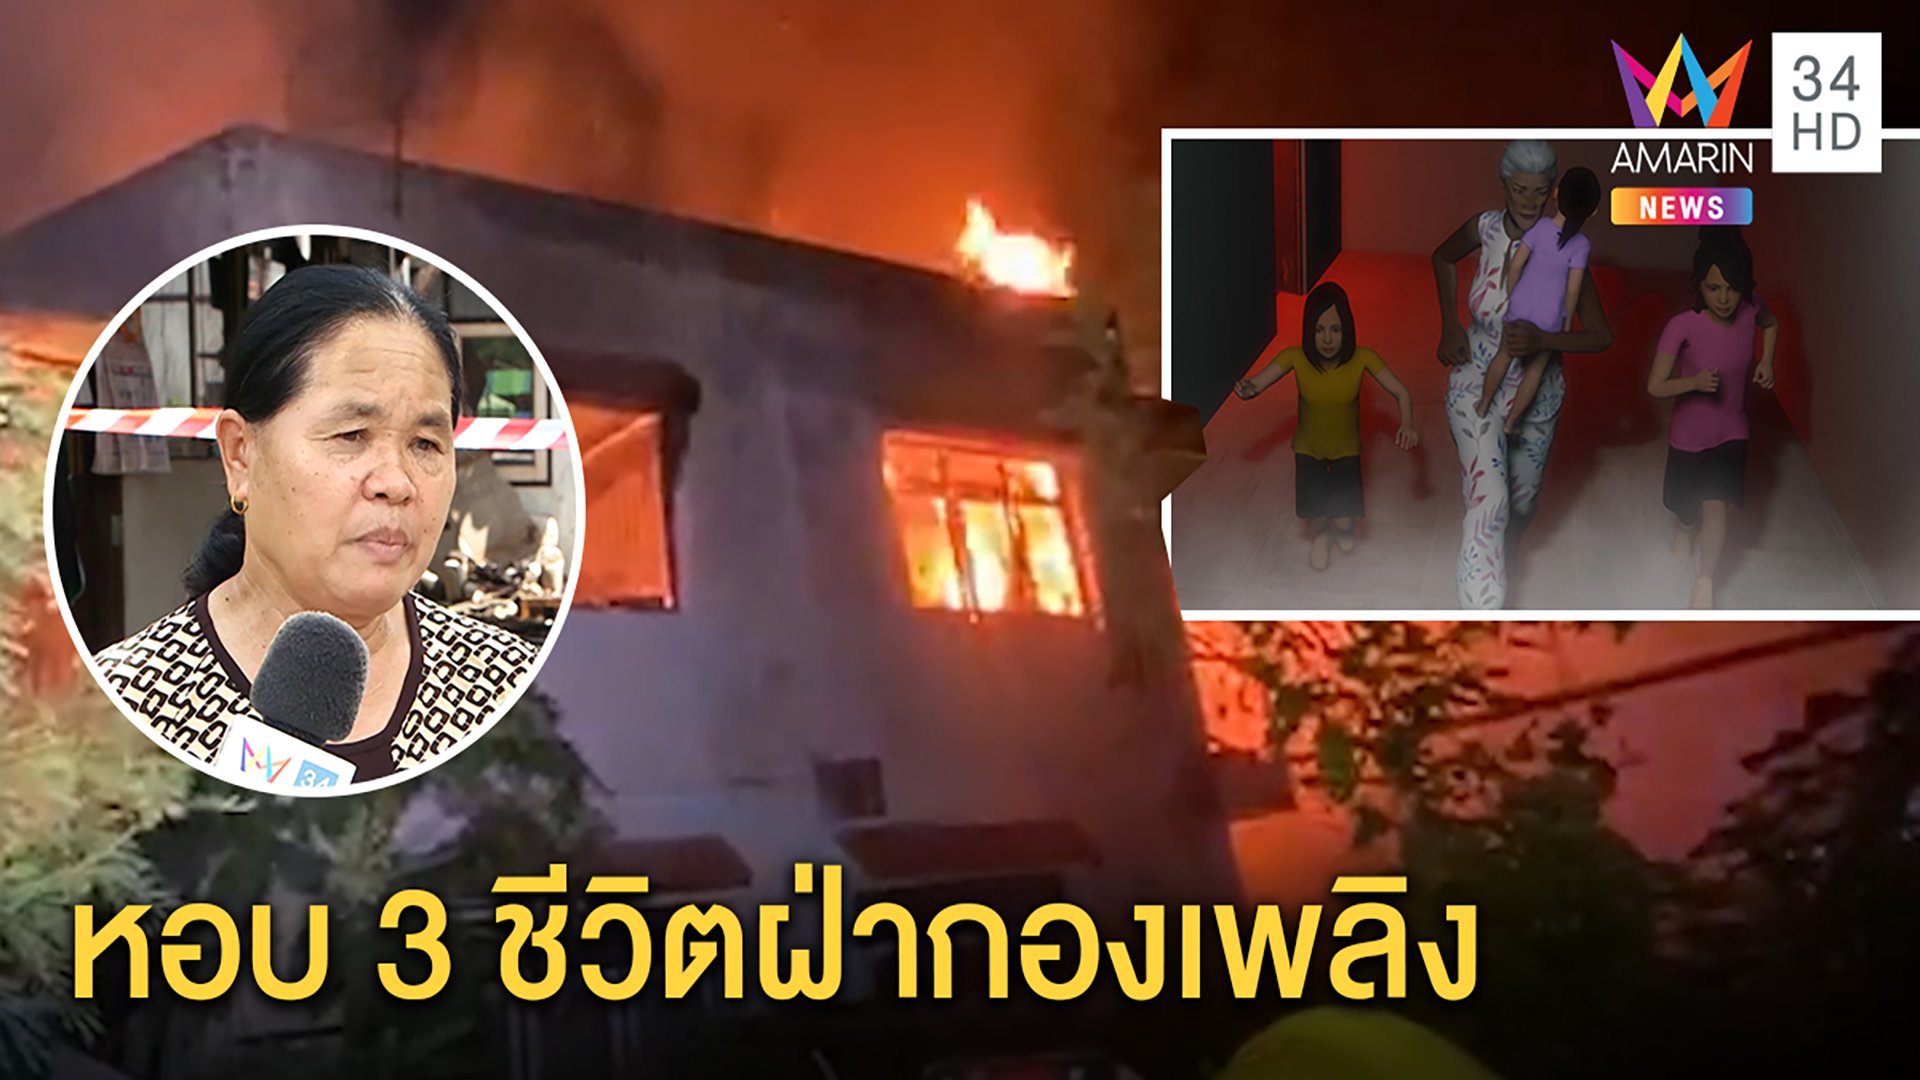 ยาย เล่านาทีหนีตาย จูงมือหลาน 3 คนฝ่ากองเพลิงไหม้บ้านวอดทั้งหลัง คาดไฟฟ้าลัดวงจร | ทุบโต๊ะข่าว | 22 พ.ค. 63 | AMARIN TVHD34